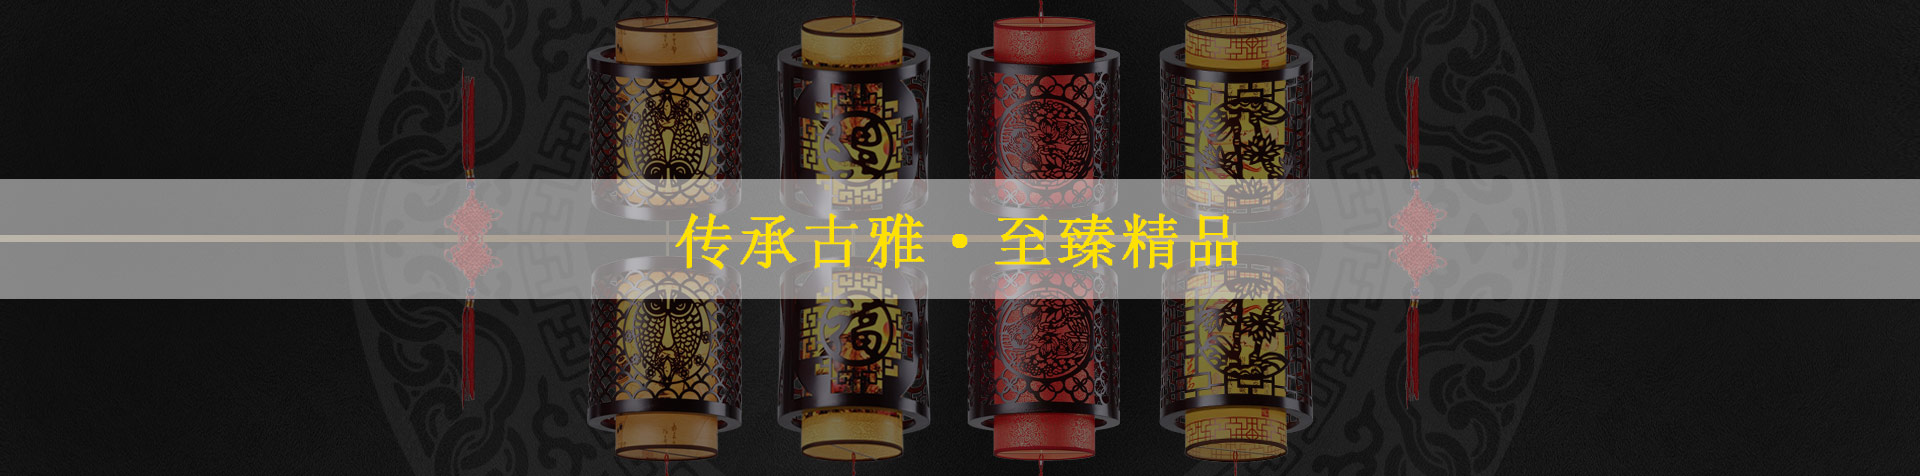 中式茶樓吊燈升華品茗之境界 